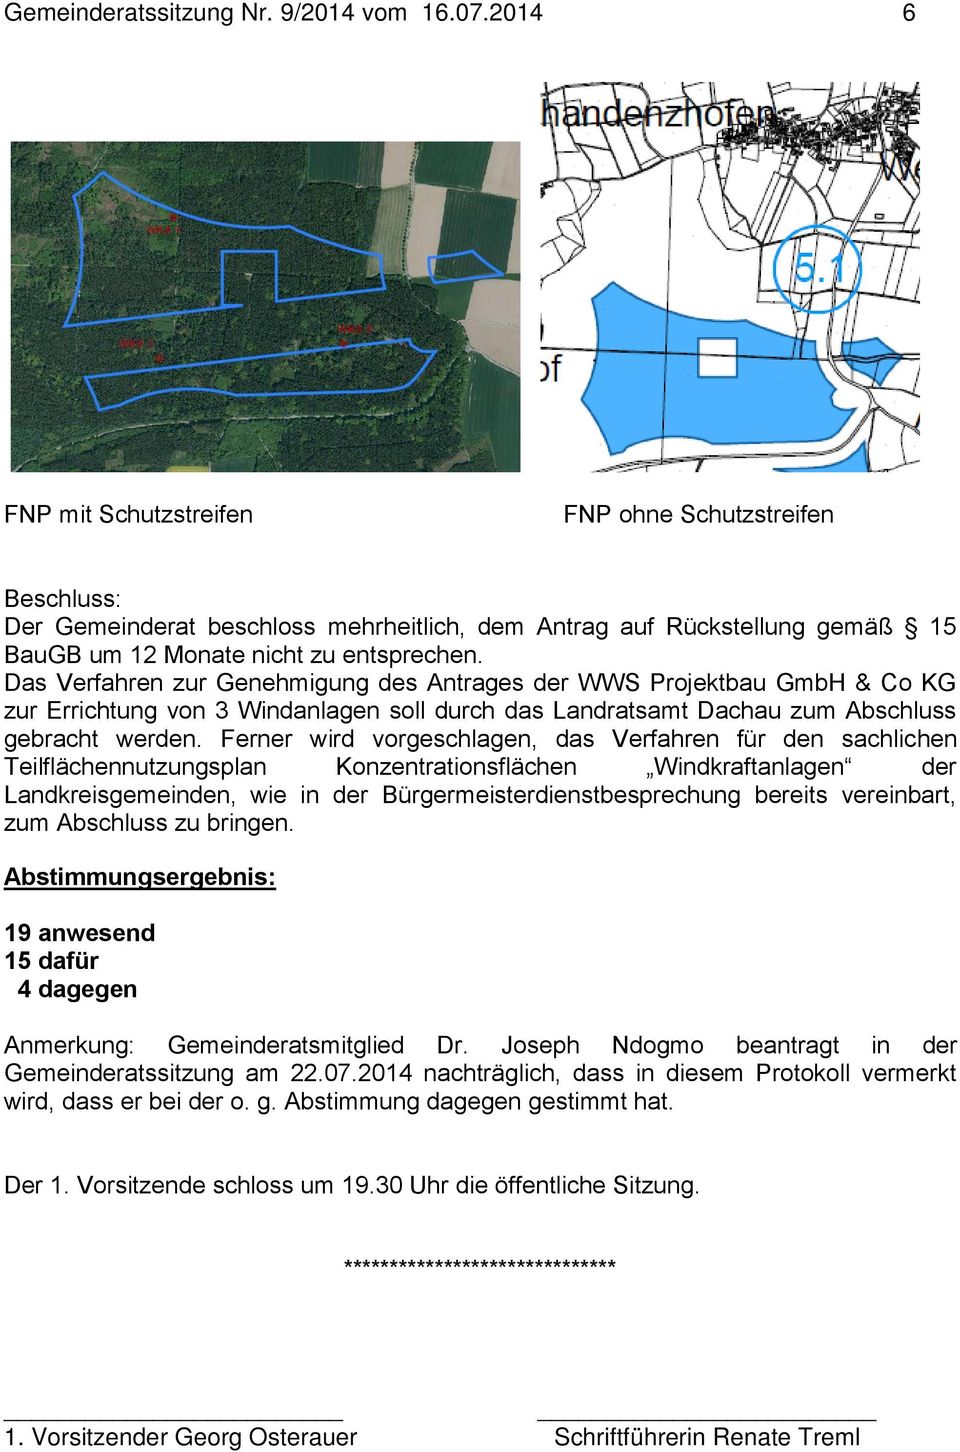 Das Verfahren zur Genehmigung des Antrages der WWS Projektbau GmbH & Co KG zur Errichtung von 3 Windanlagen soll durch das Landratsamt Dachau zum Abschluss gebracht werden.